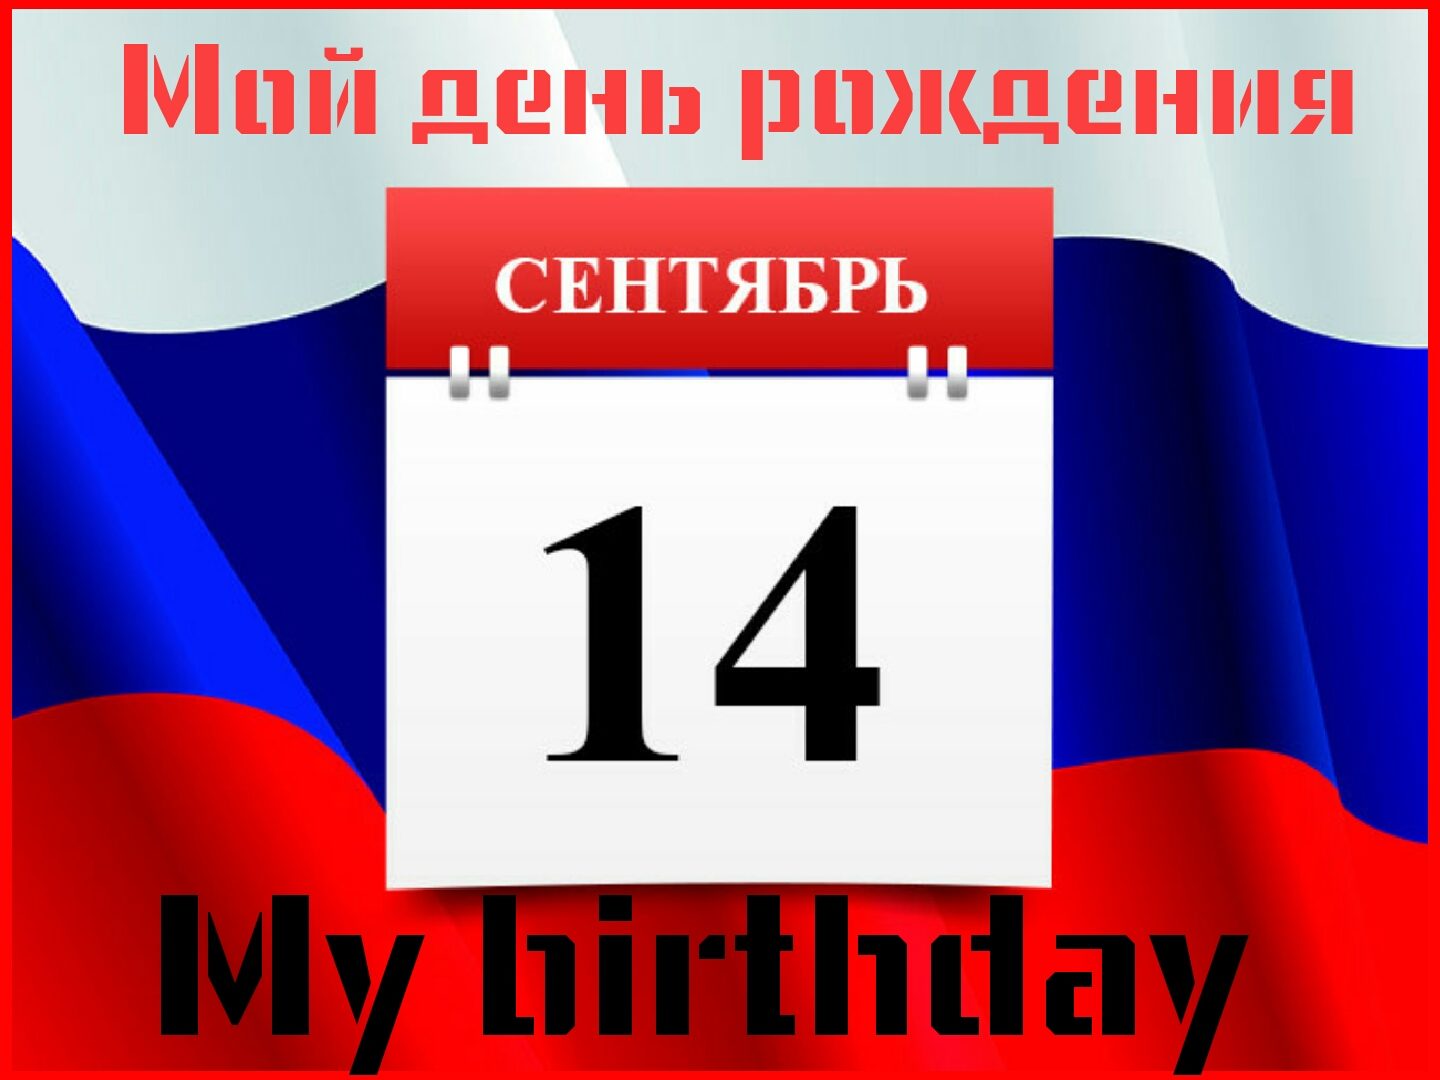 SweetLadyMary Мой день рождения - 14 сентября! ПРИНИМАЮ ПОЗДРАВЛЕНИЯ И ПОДАРКИ! My birthday is September 14th! I ACCEPT CONGRATULATIONS AND GIFTS! image: 2